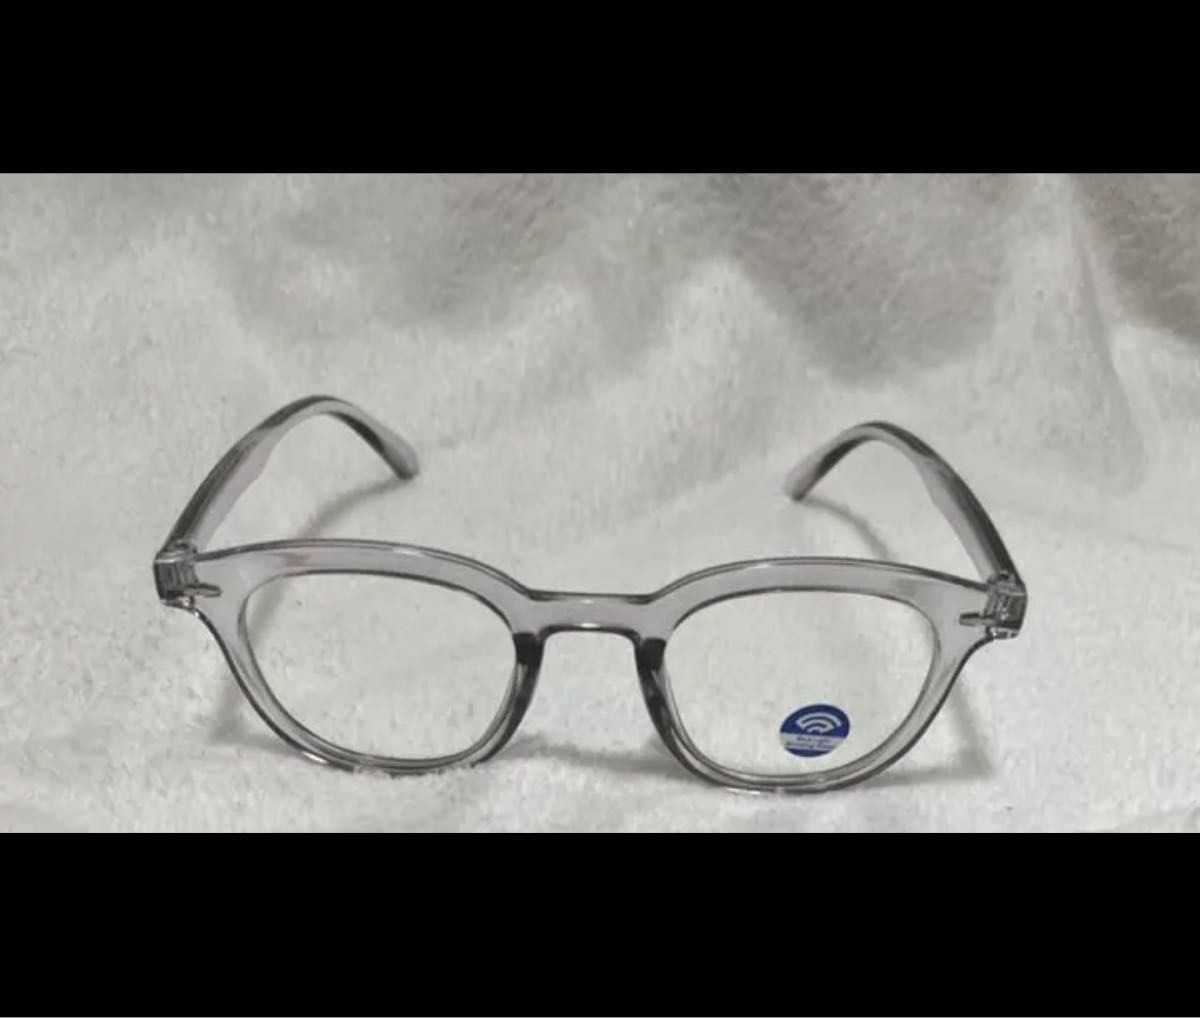 ブラック クリアサングラス 38mm クリア眼鏡 韓国スタイル メガネ